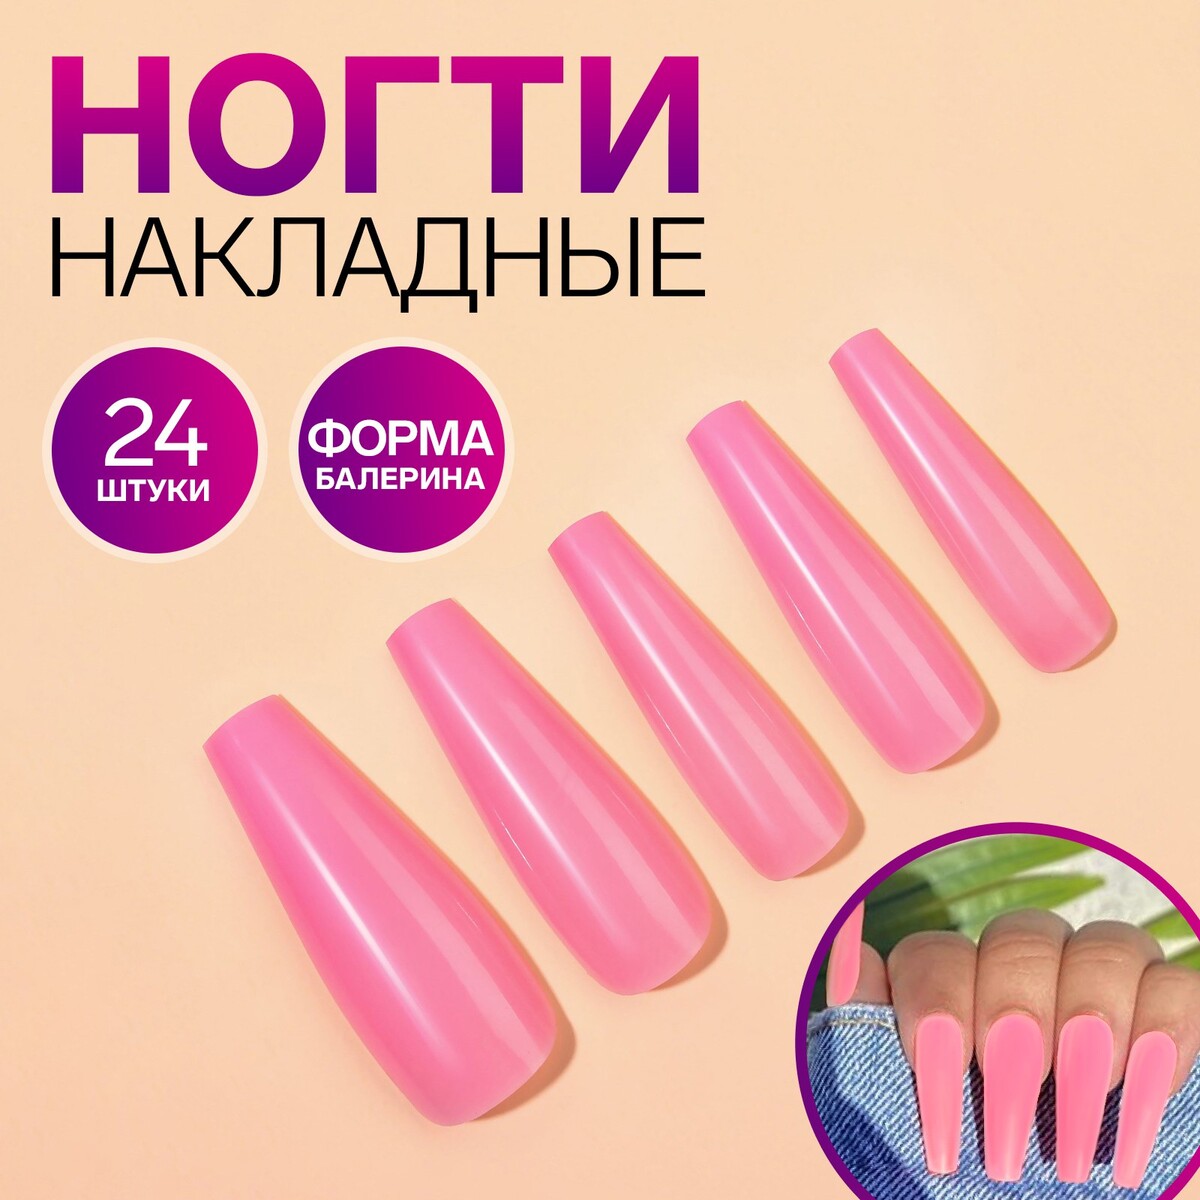 Накладные ногти, 24 шт, форма балерина, цвет нежно-розовый fiber gel для наращивания ногтей со стекловолокном led uv 15 мл нежно розовый